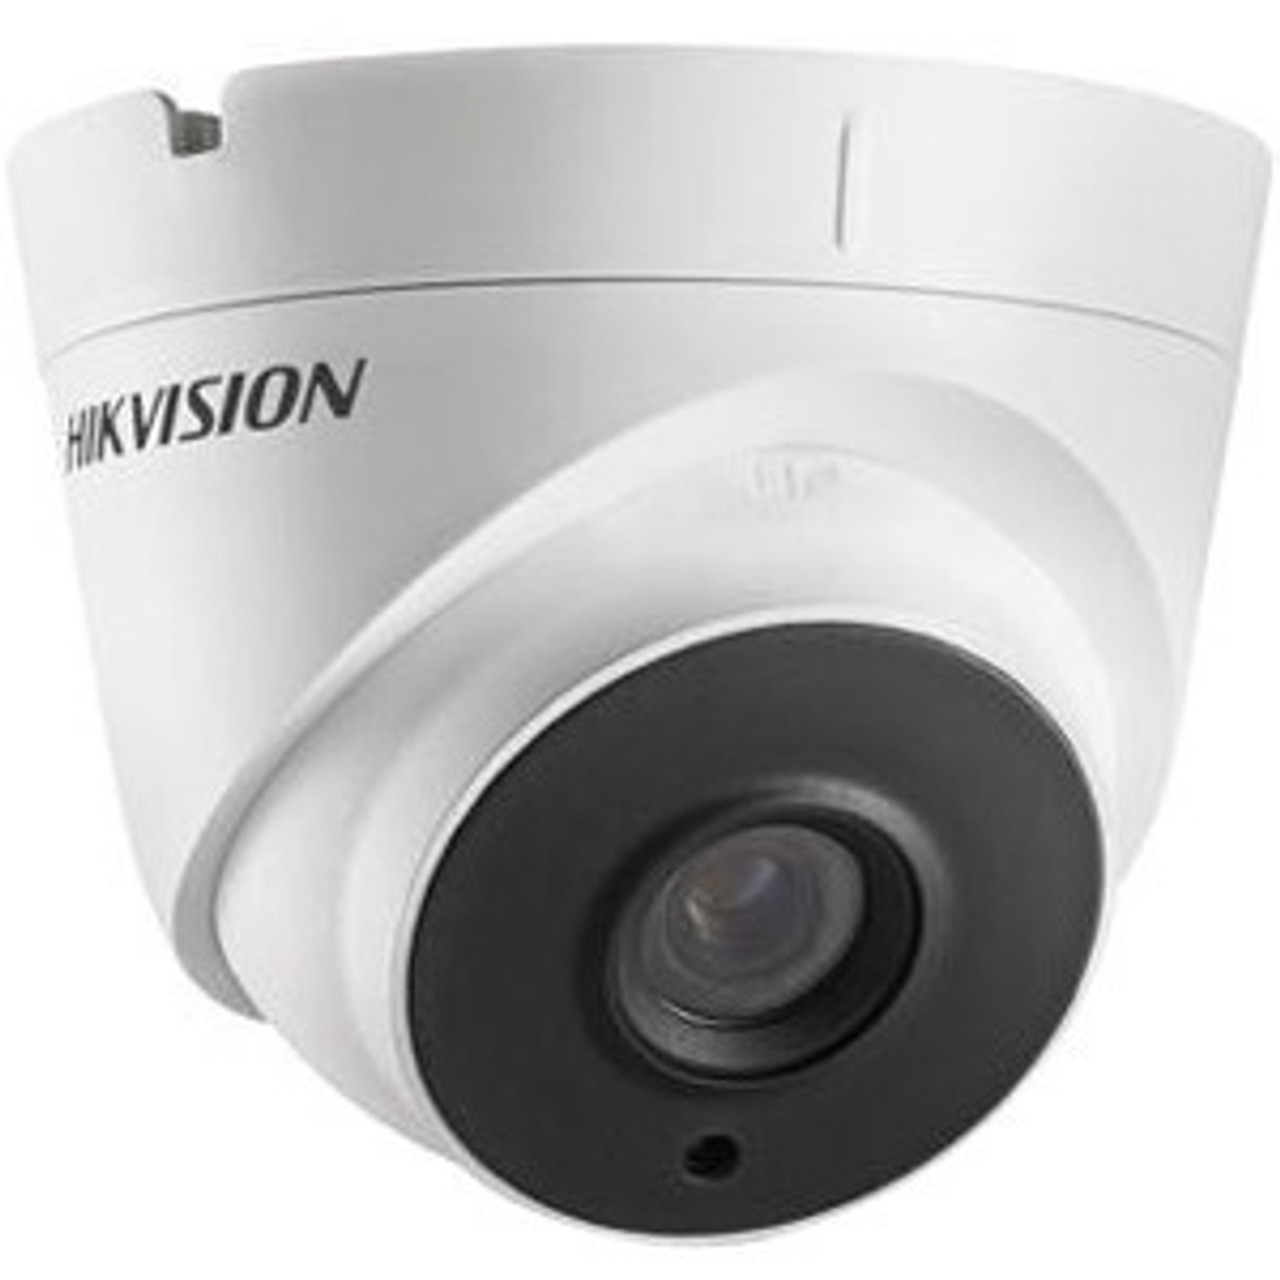 Hikvision DS-2CE56H0T-IT1F 2.8MM